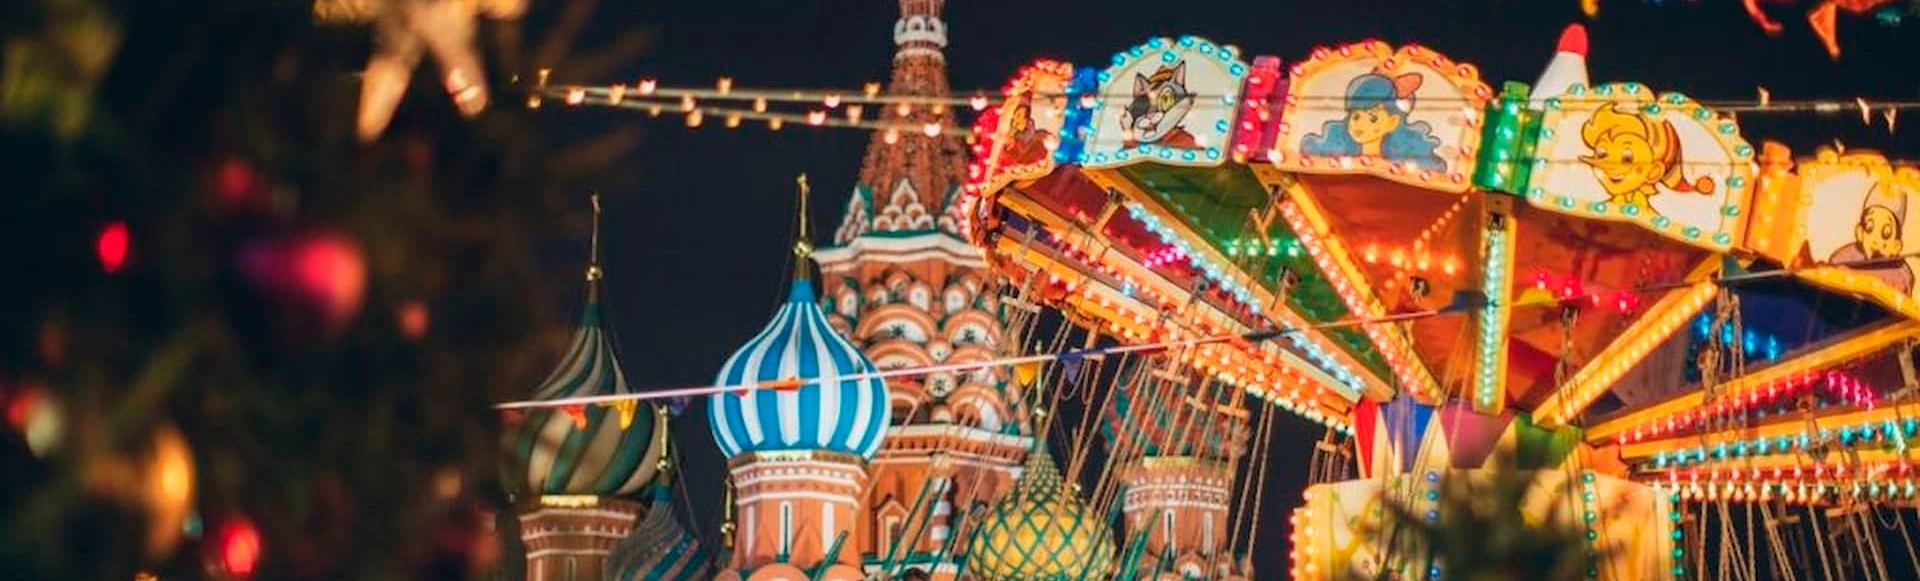 В БКЗ «Октябрьский» покажут «Большое новогоднее путешествие по России»
